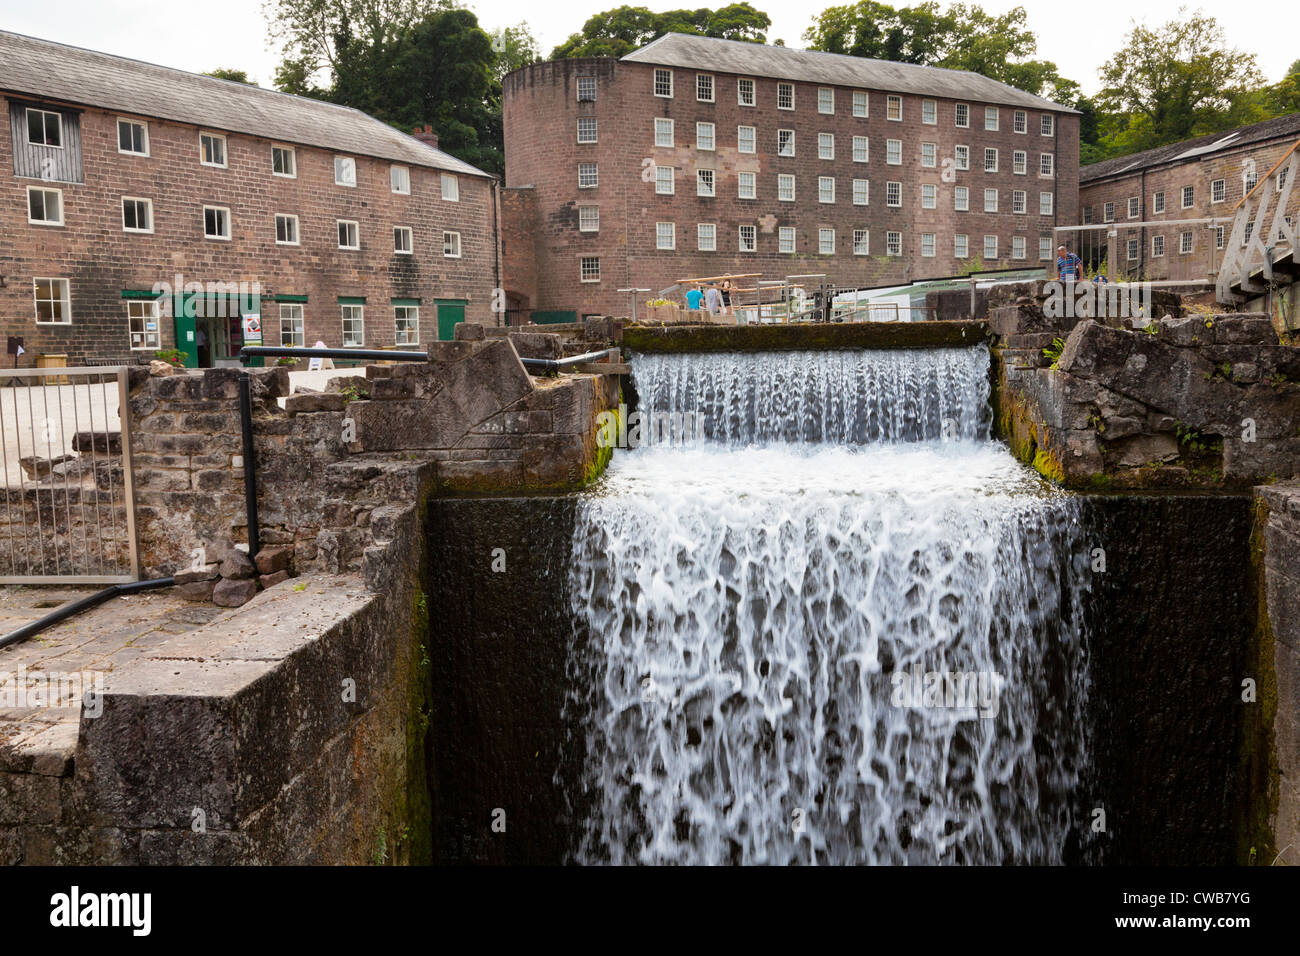 Moulin à eau moulin à Cromford à bâtiments, utilisés pour la filature du coton. Partie de la Derwent Valley Mills Site du patrimoine mondial. Le Derbyshire, Angleterre, RU Banque D'Images